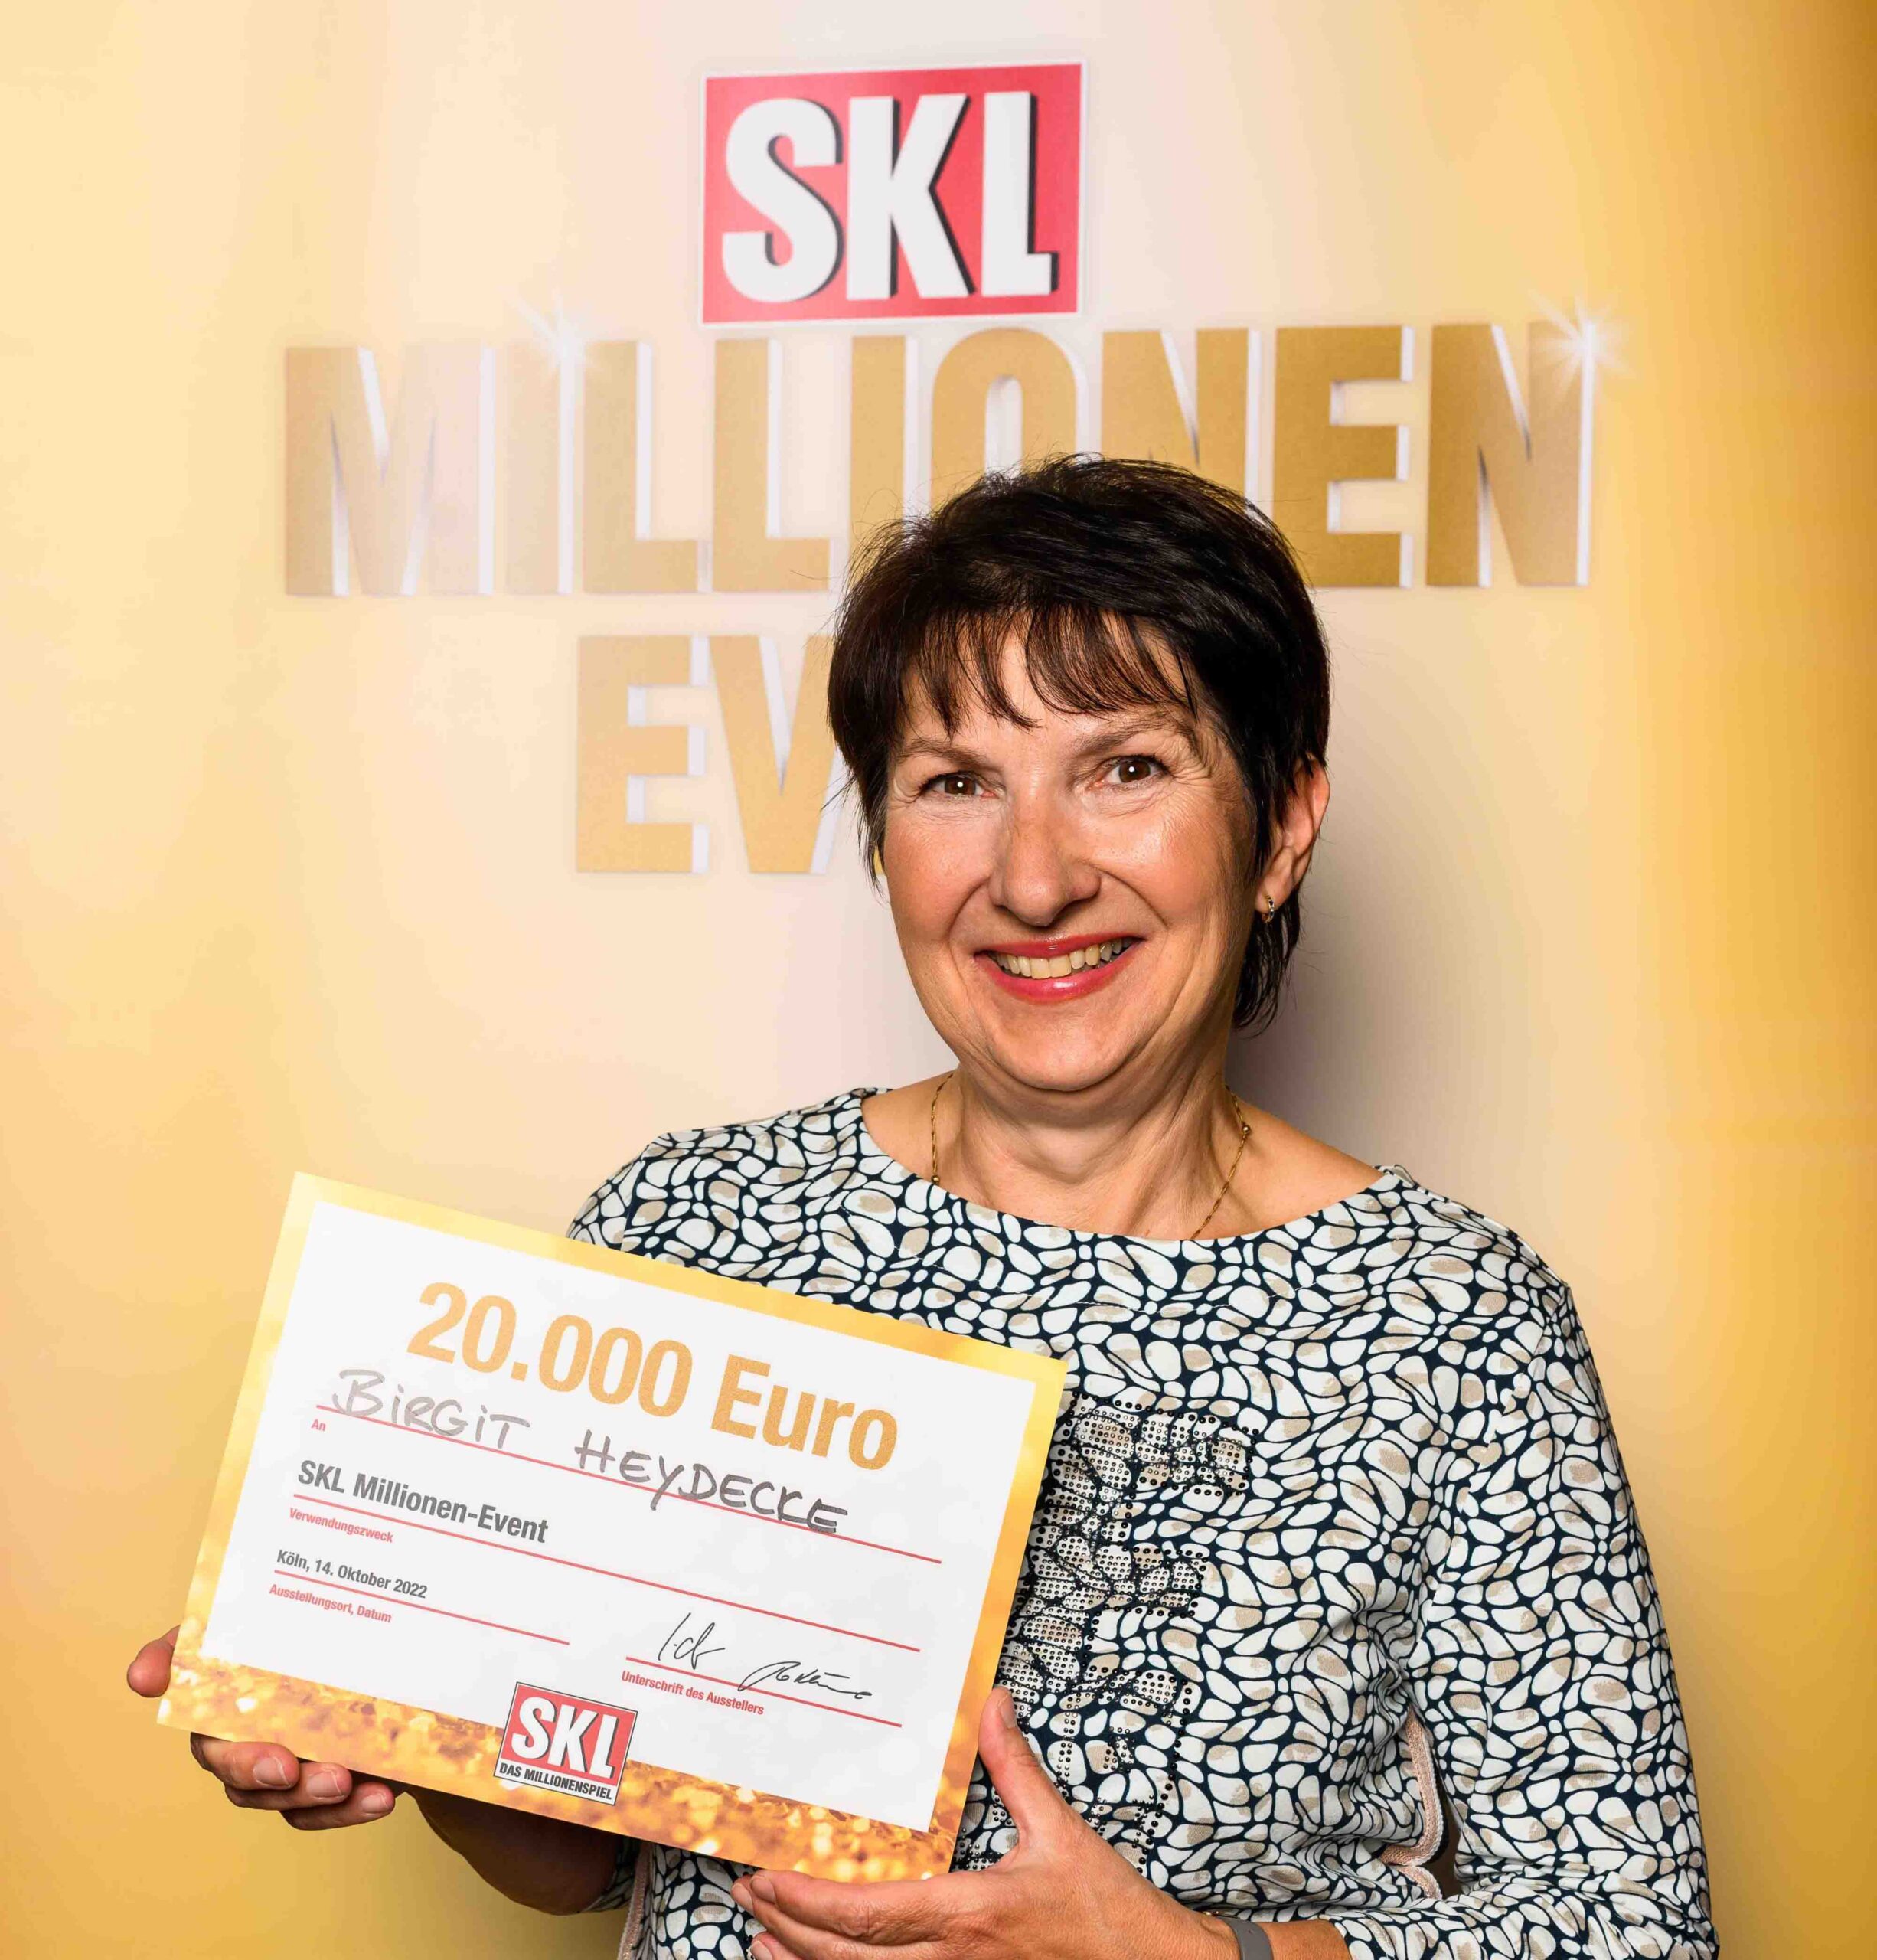 Birgit Heydecke gewinnt 20.000 € beim SKL Millionen-Event